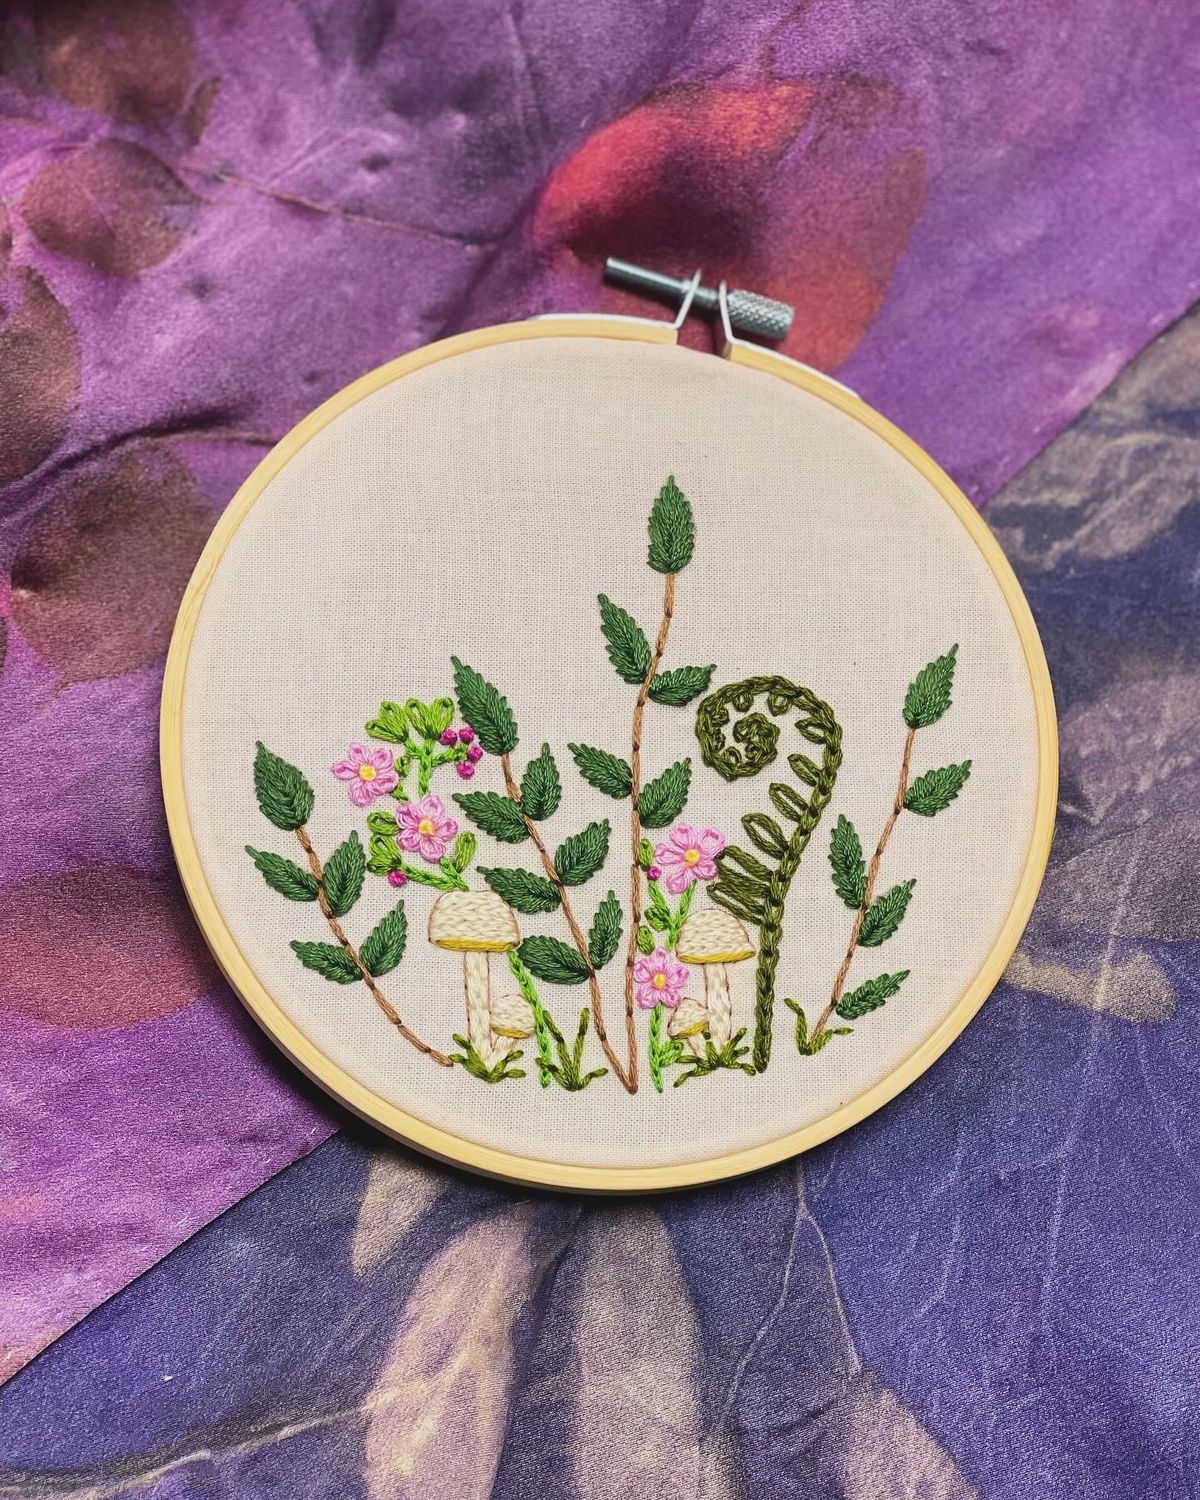 Greens Hand Embroidery Class @ Fiber Fest